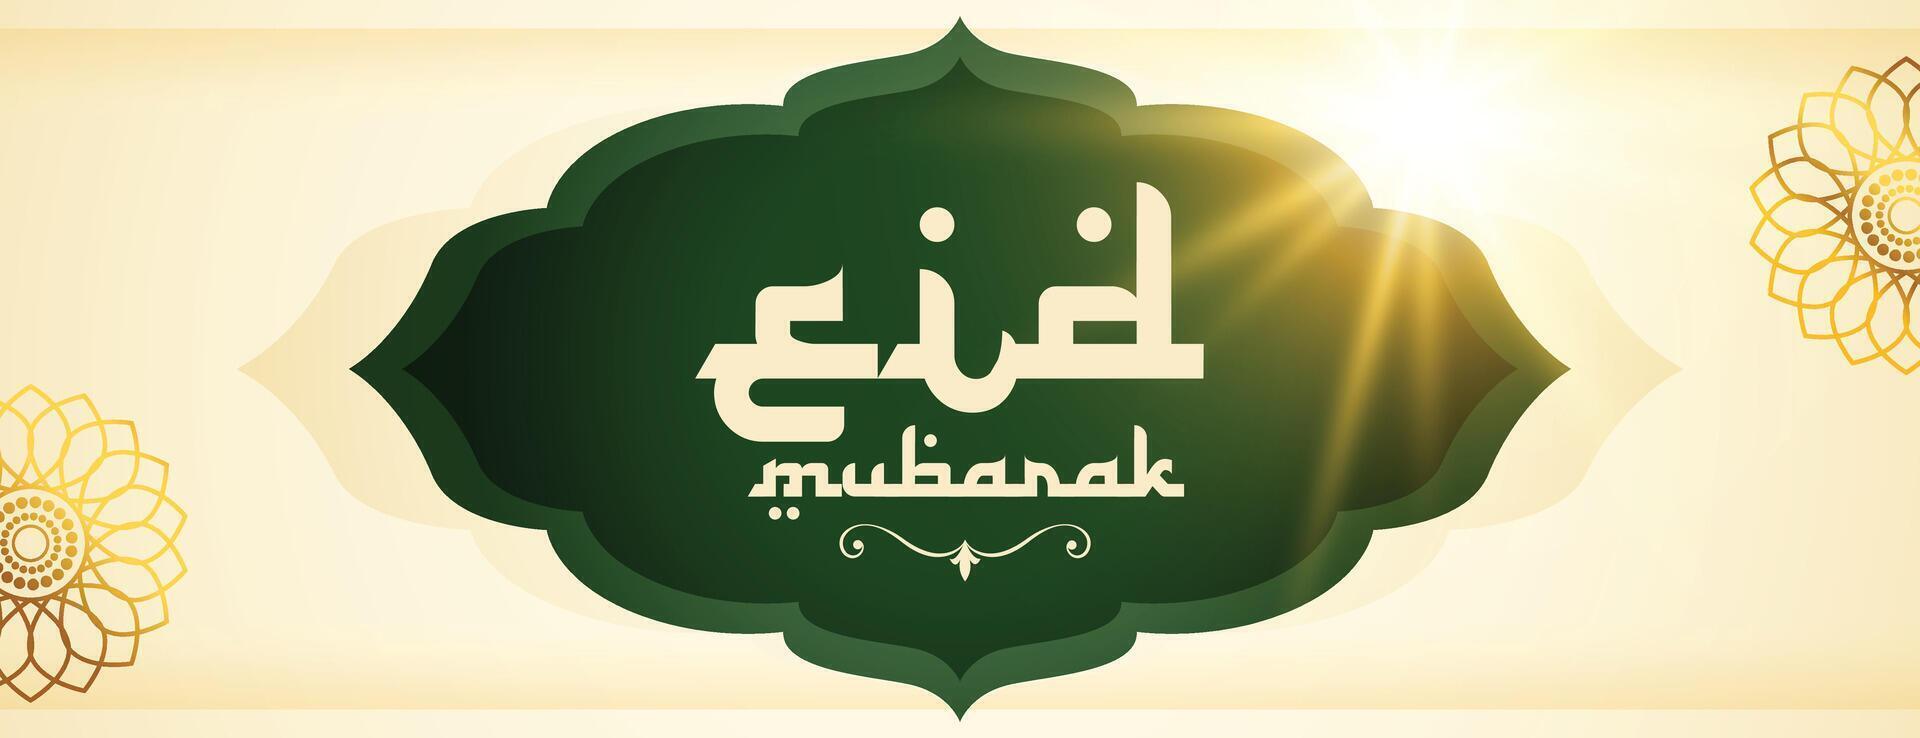 heilig festival eid mubarak cultureel behang met licht effect vector